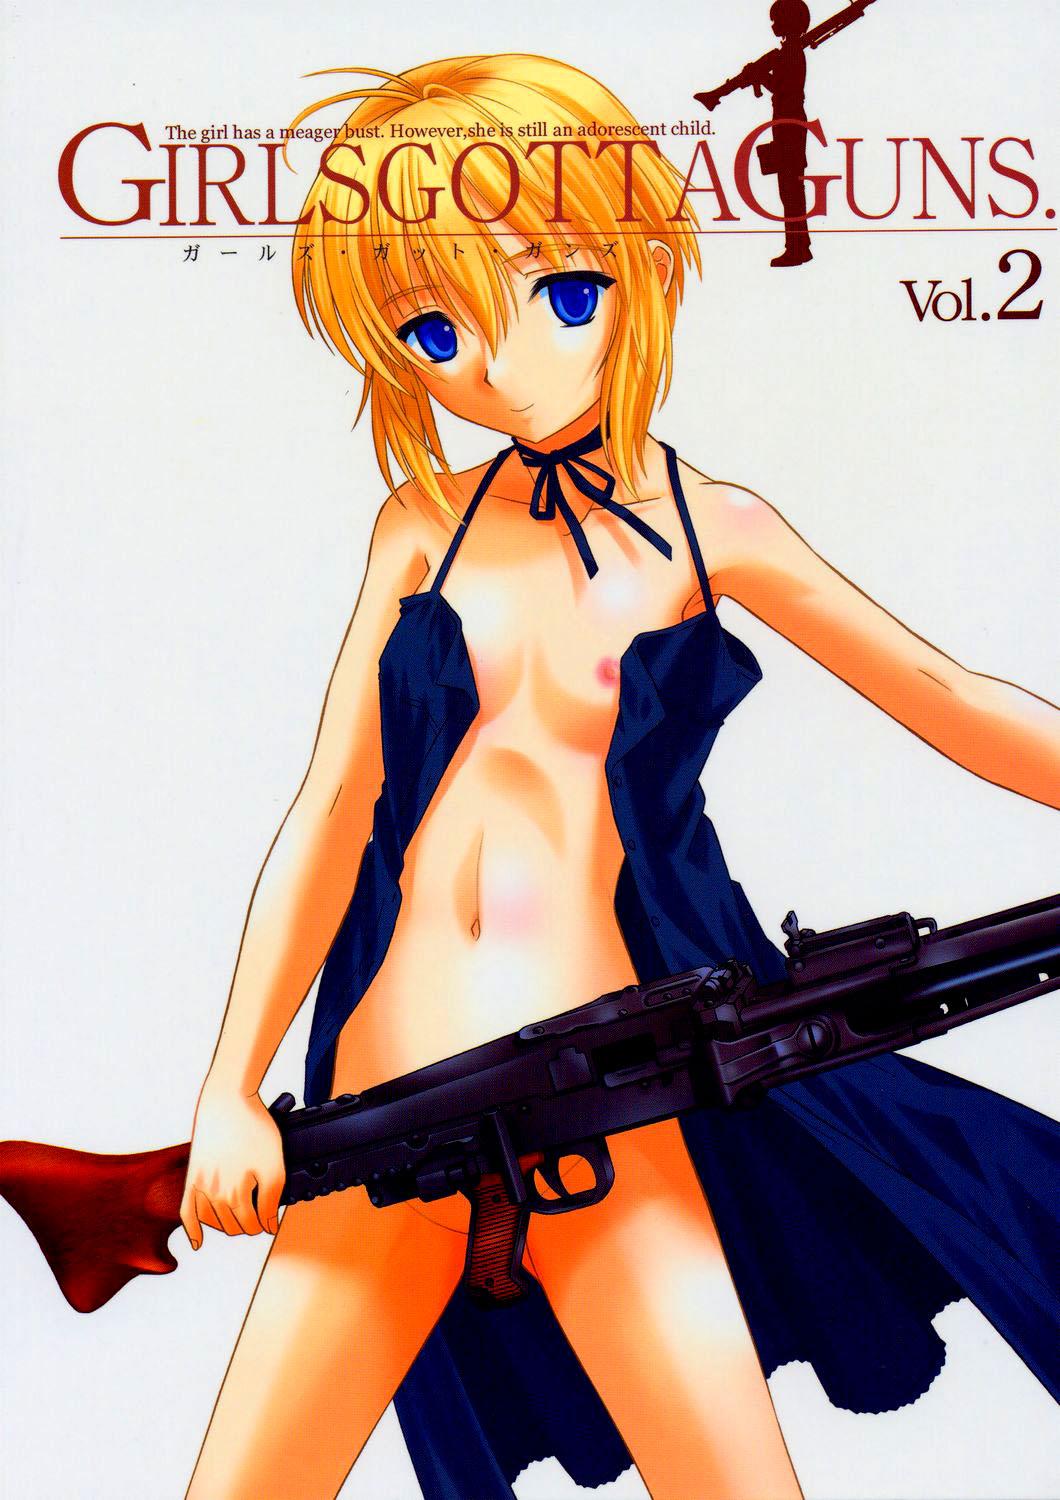 Japan Girls Gotta Guns. Vol. 2 - Gunslinger girl Small - Picture 1